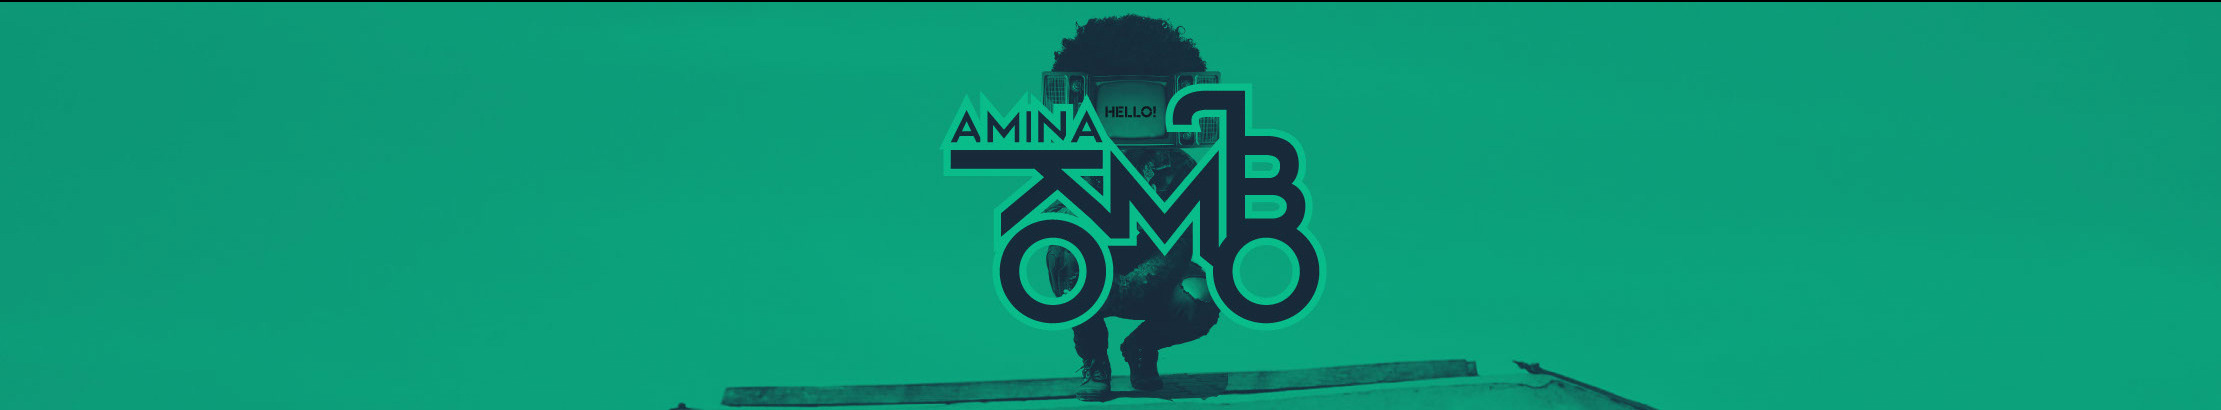 Amina Kombo のプロファイルバナー